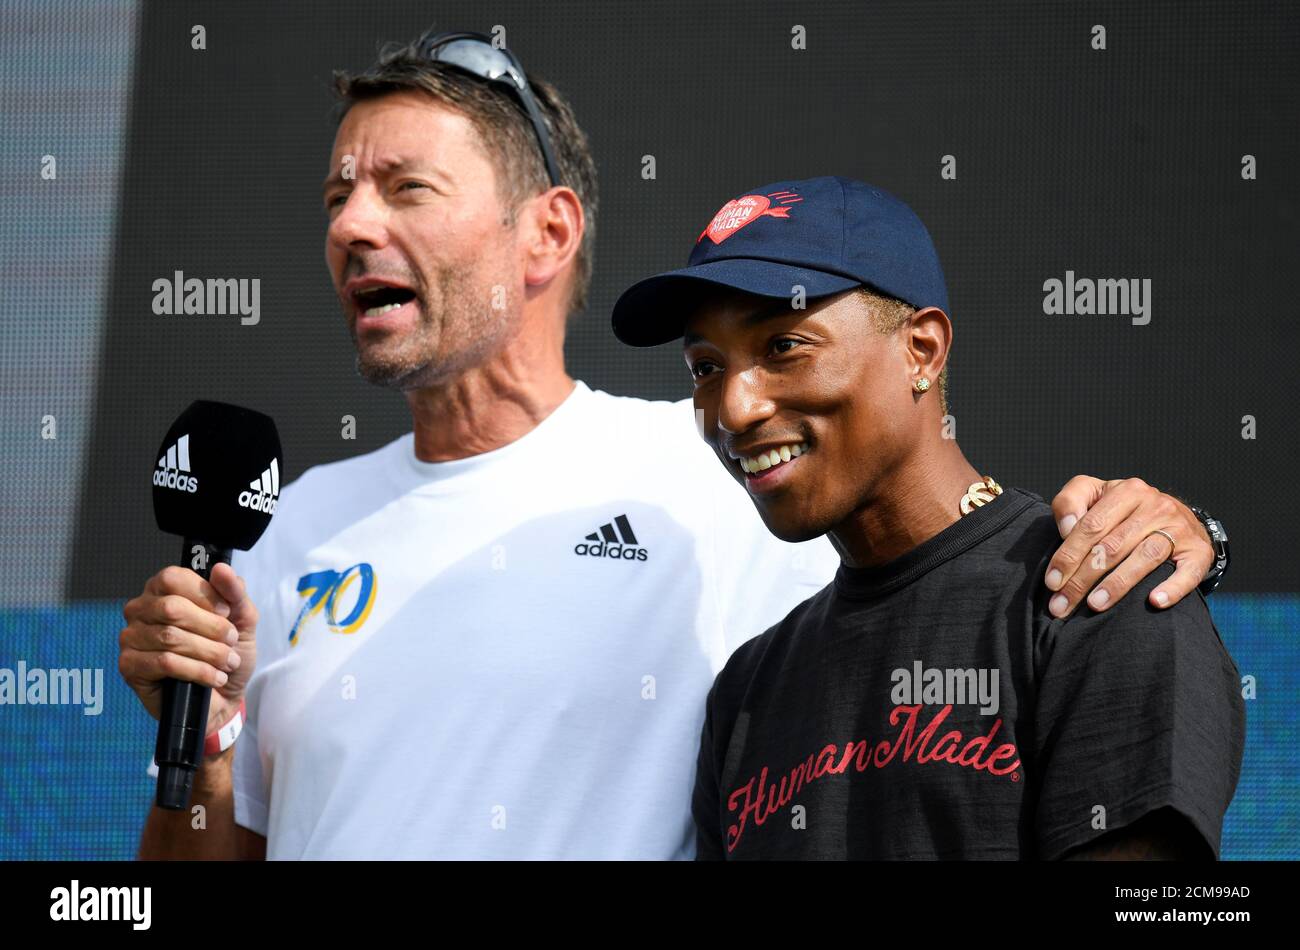 Kasper Rorsted, PDG d'Adidas, s'exprime à côté de la chanteuse Pharrell  Williams lorsqu'ils assistent aux célébrations du 70e anniversaire du  fabricant allemand de vêtements de sport Adidas au siège de l'entreprise à